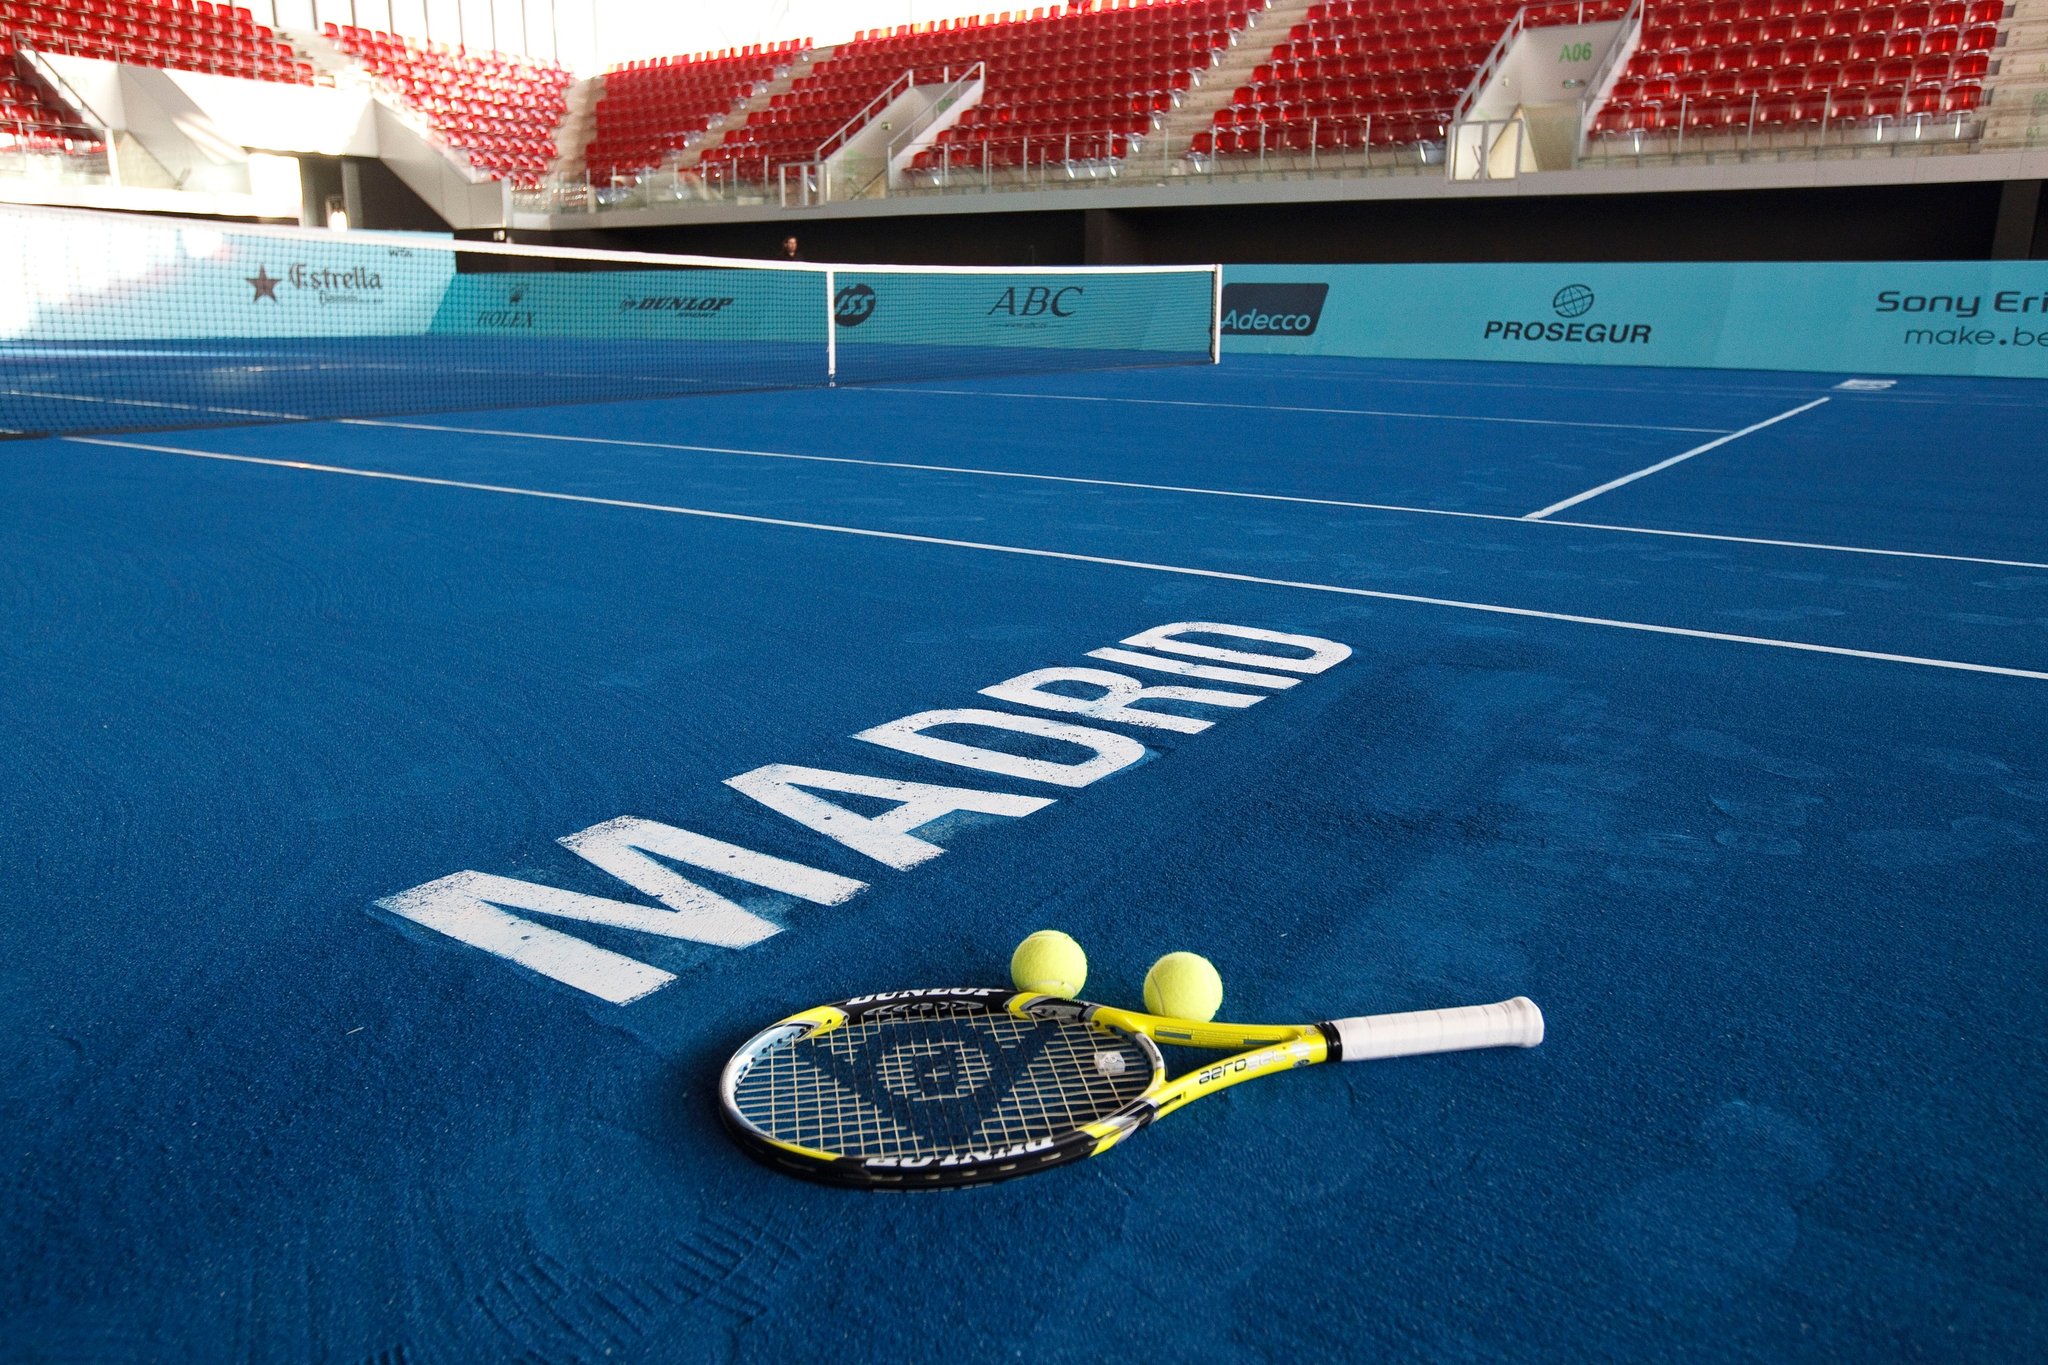 Tennisbaan en locatie in Madrid, Spanje voor een oefensessie.